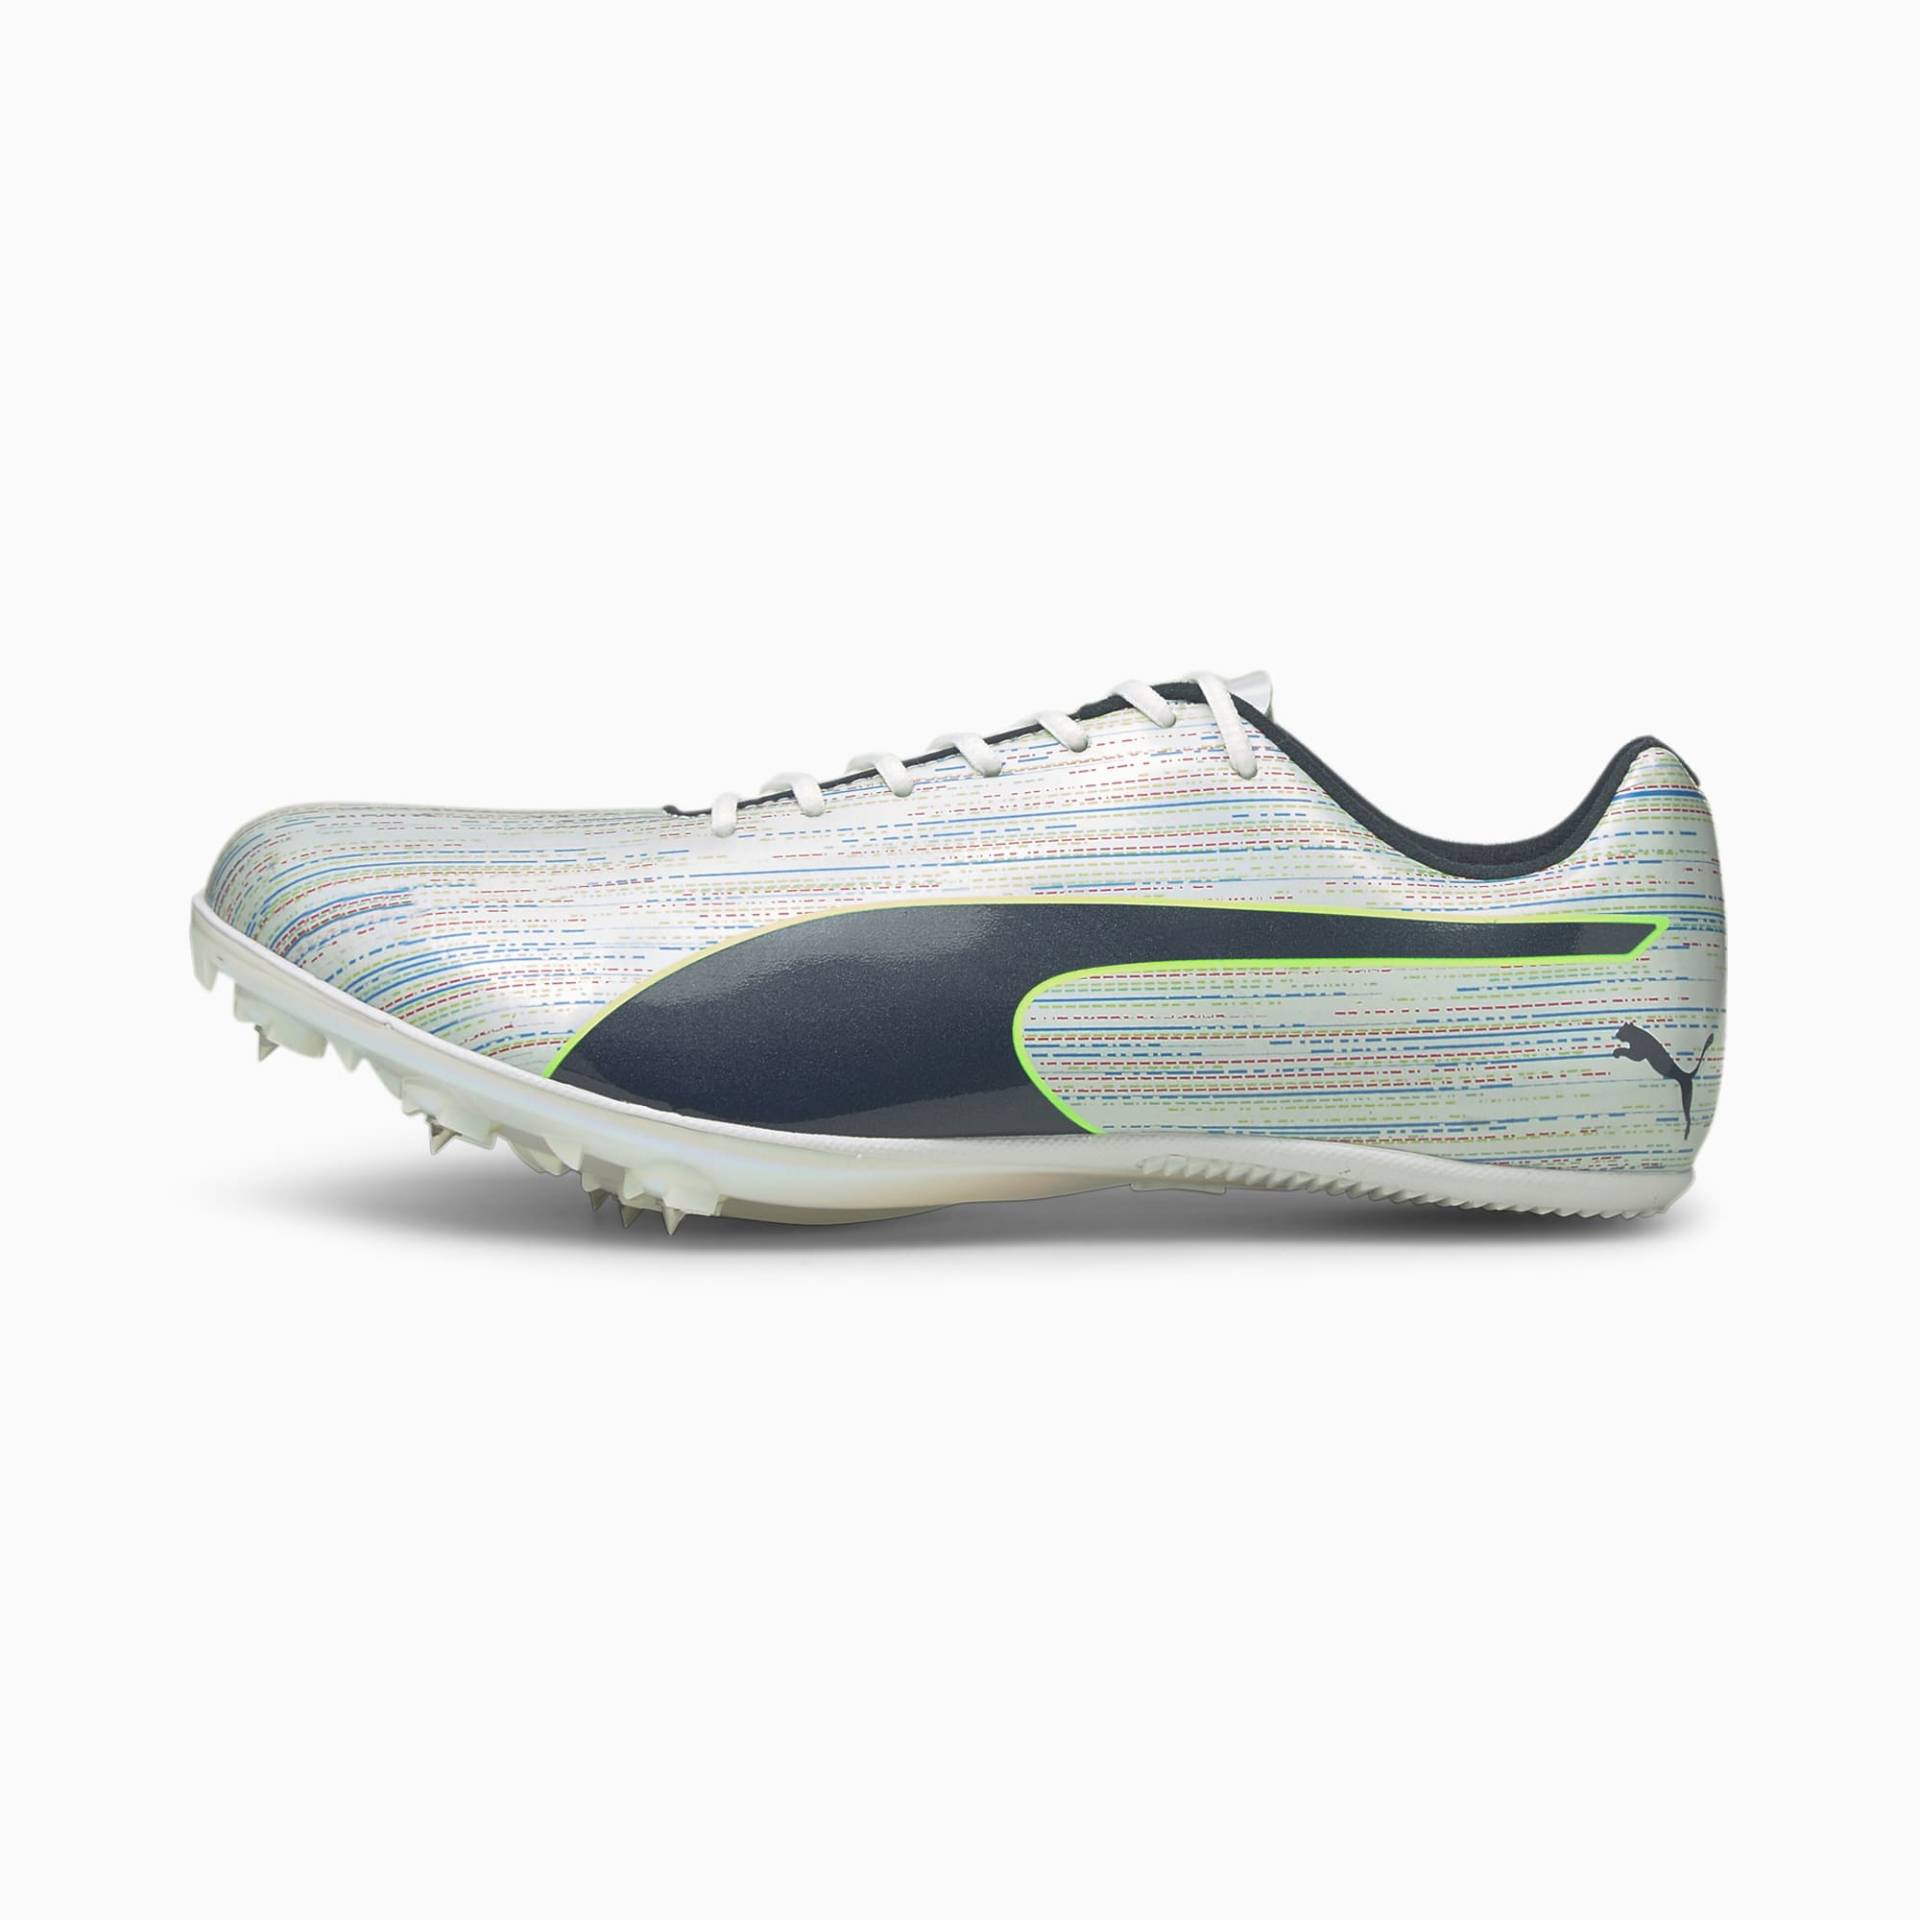 Leichtathletik: Schuhe von Puma online kaufen im JoggenOnline-Shop